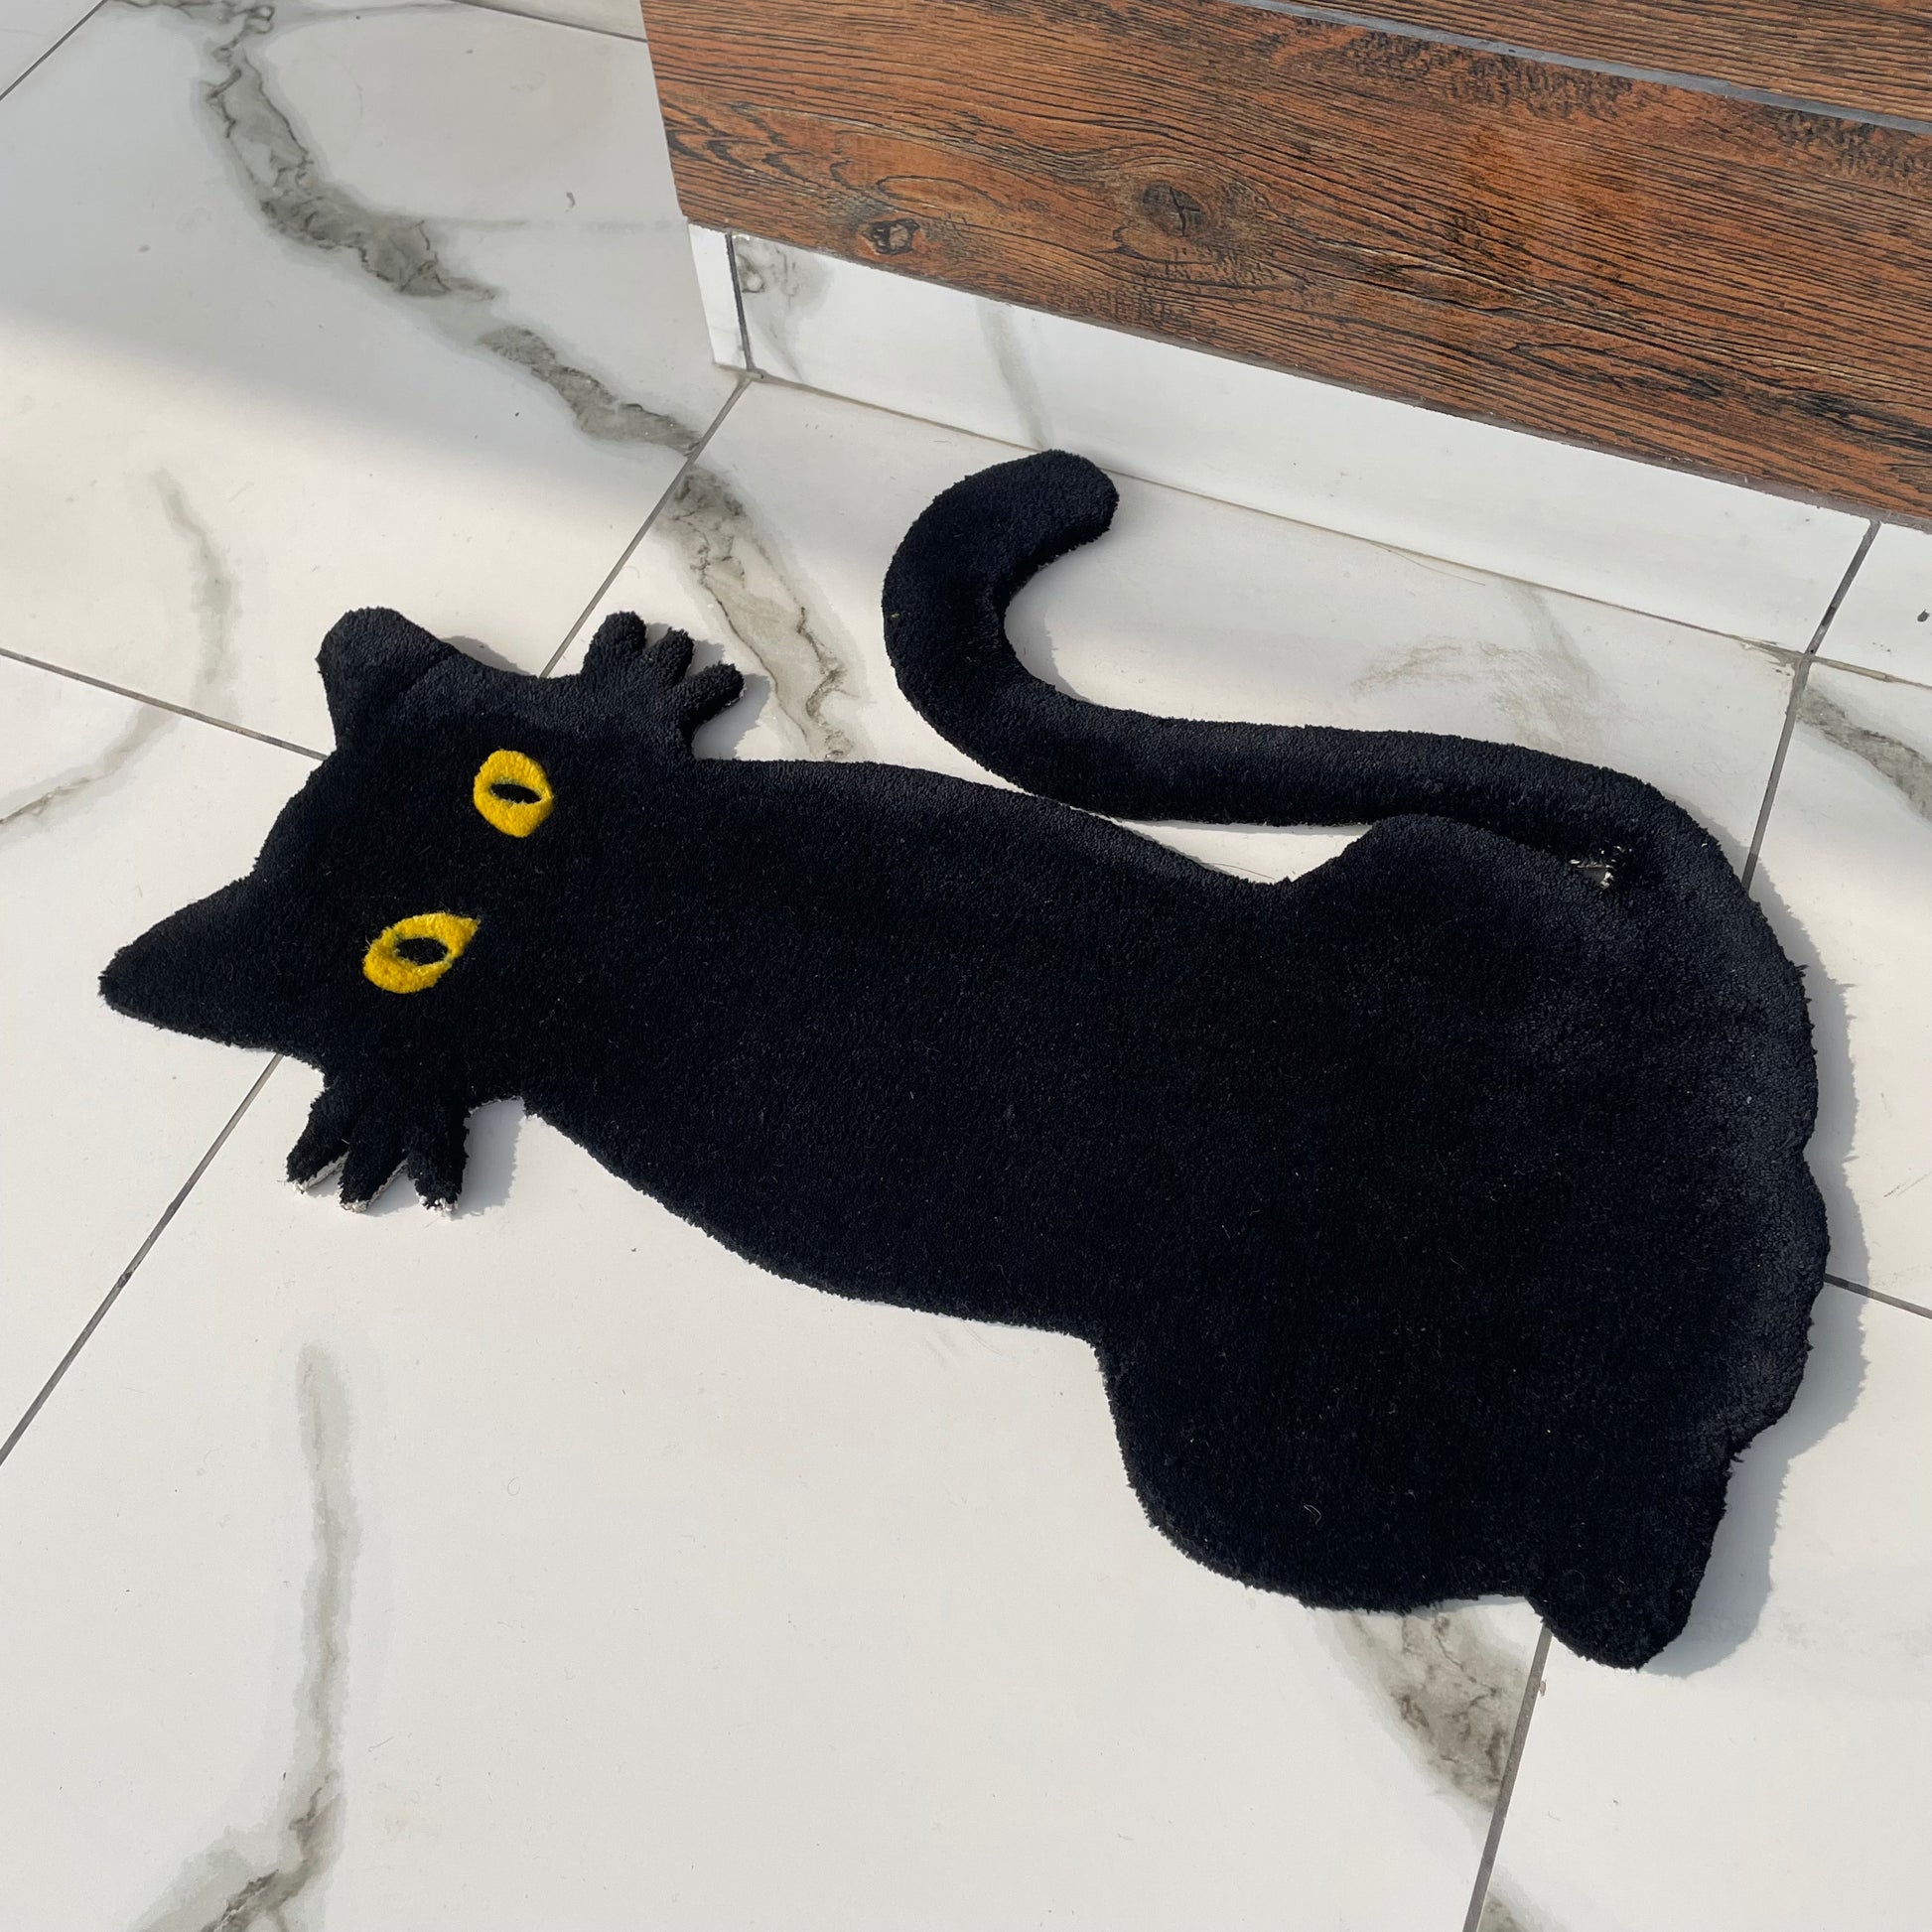 Black cat rug close up